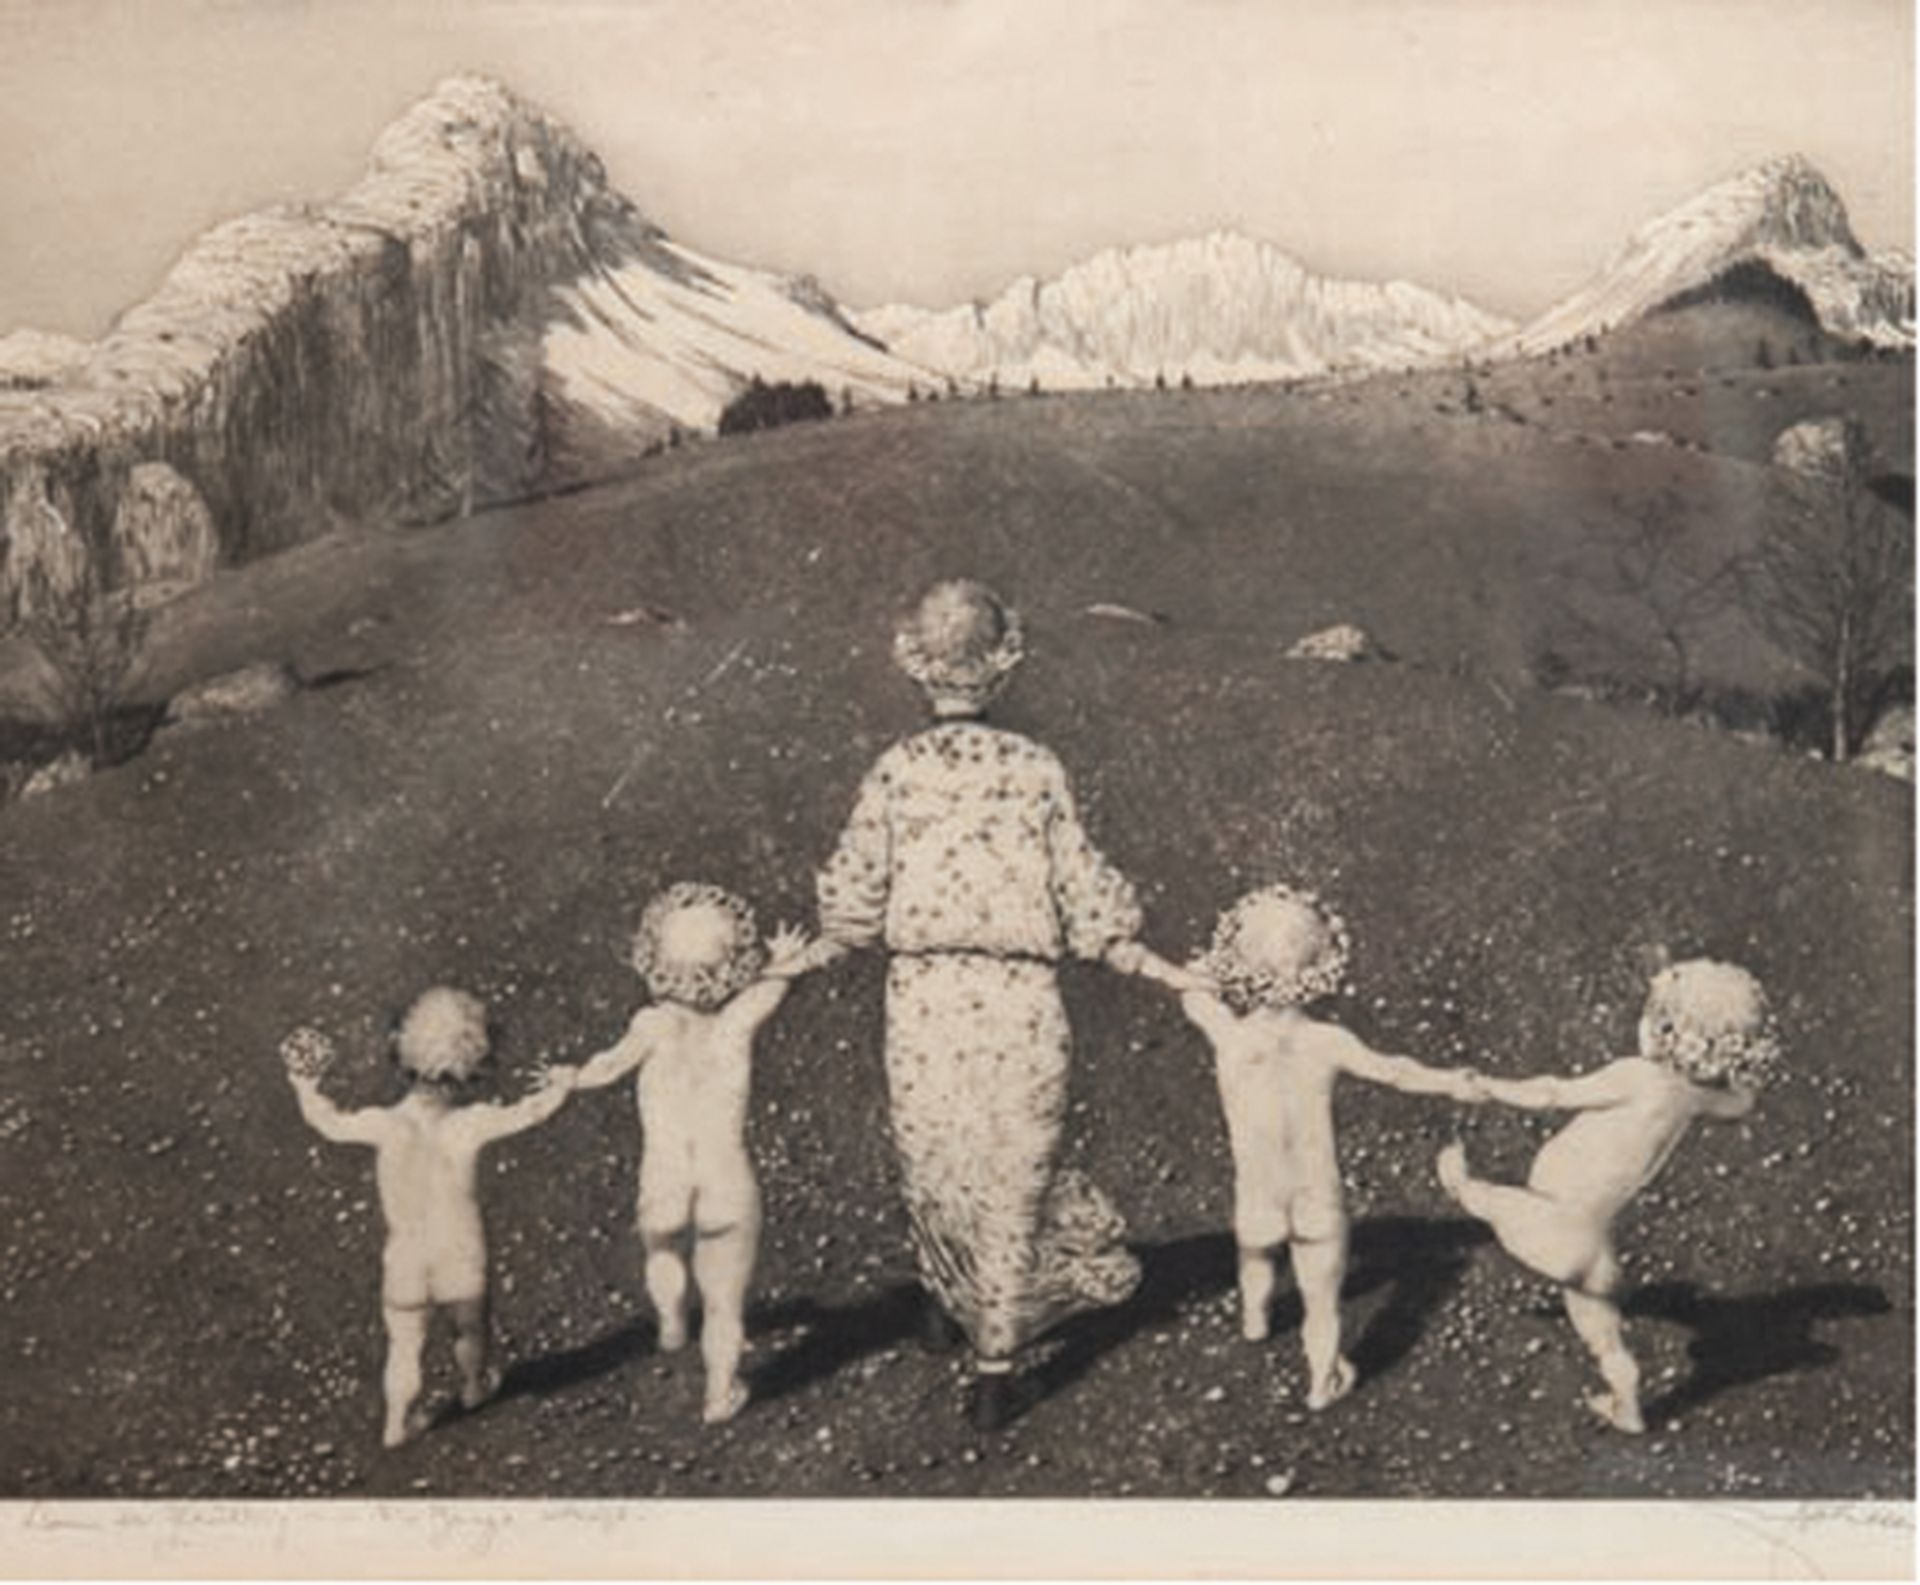 Uhl, Joseph (1877 New York-1945 Bergen im Chiemgau) "Wenn der Frühling auf die Berge steigt", Radie